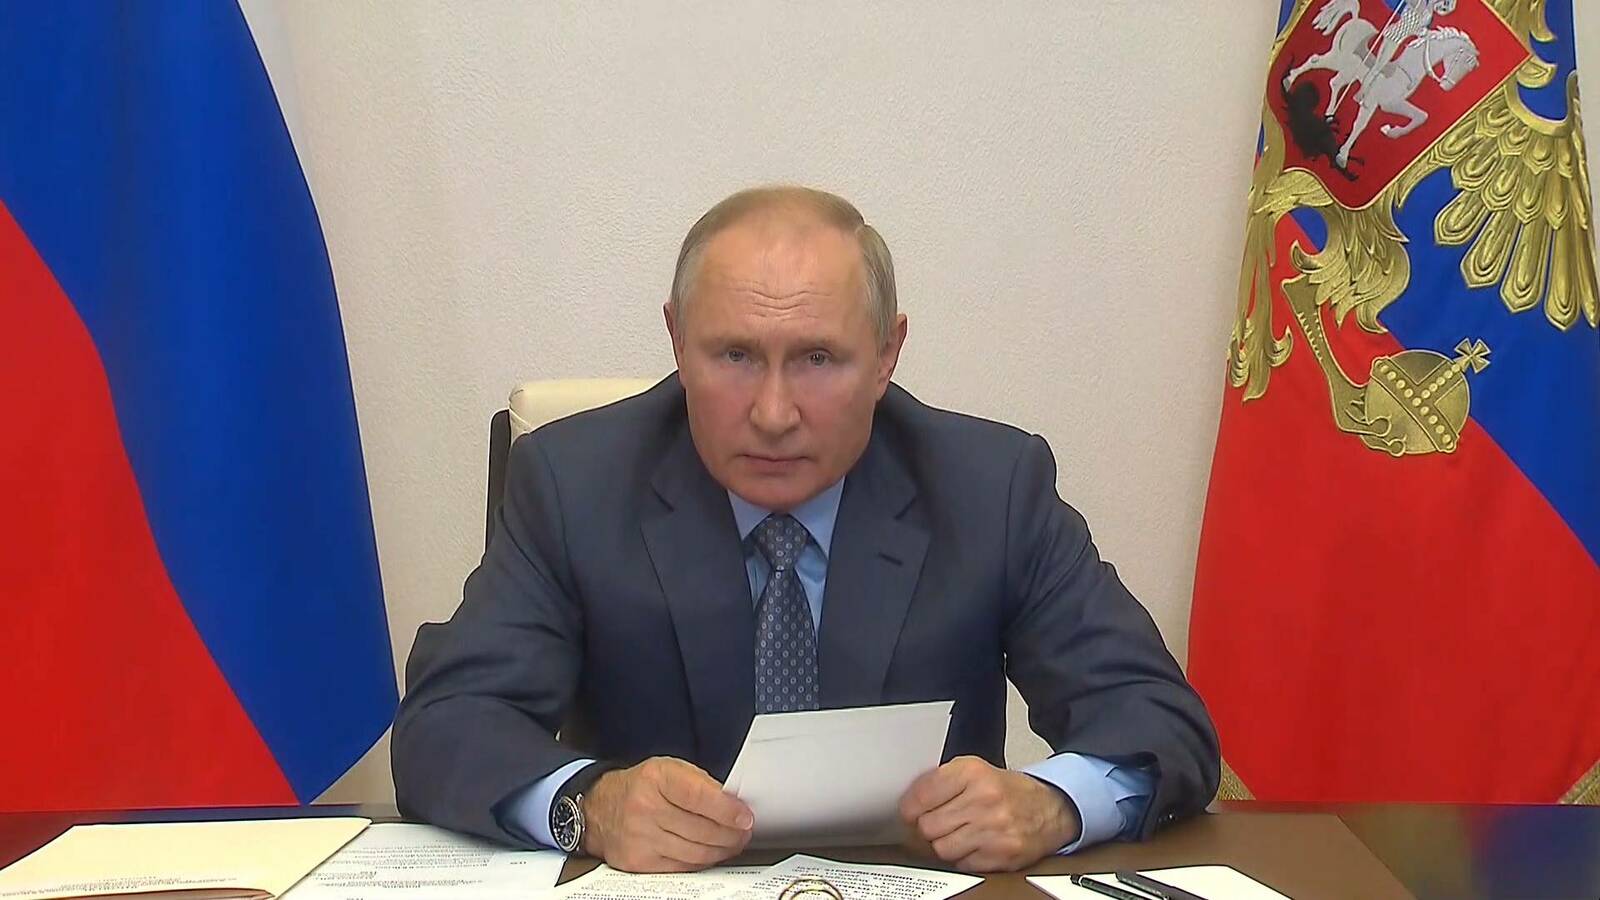 Владимир Путин Сочине канма чĕннĕ нумай ачаллă çемьепе калаçнă